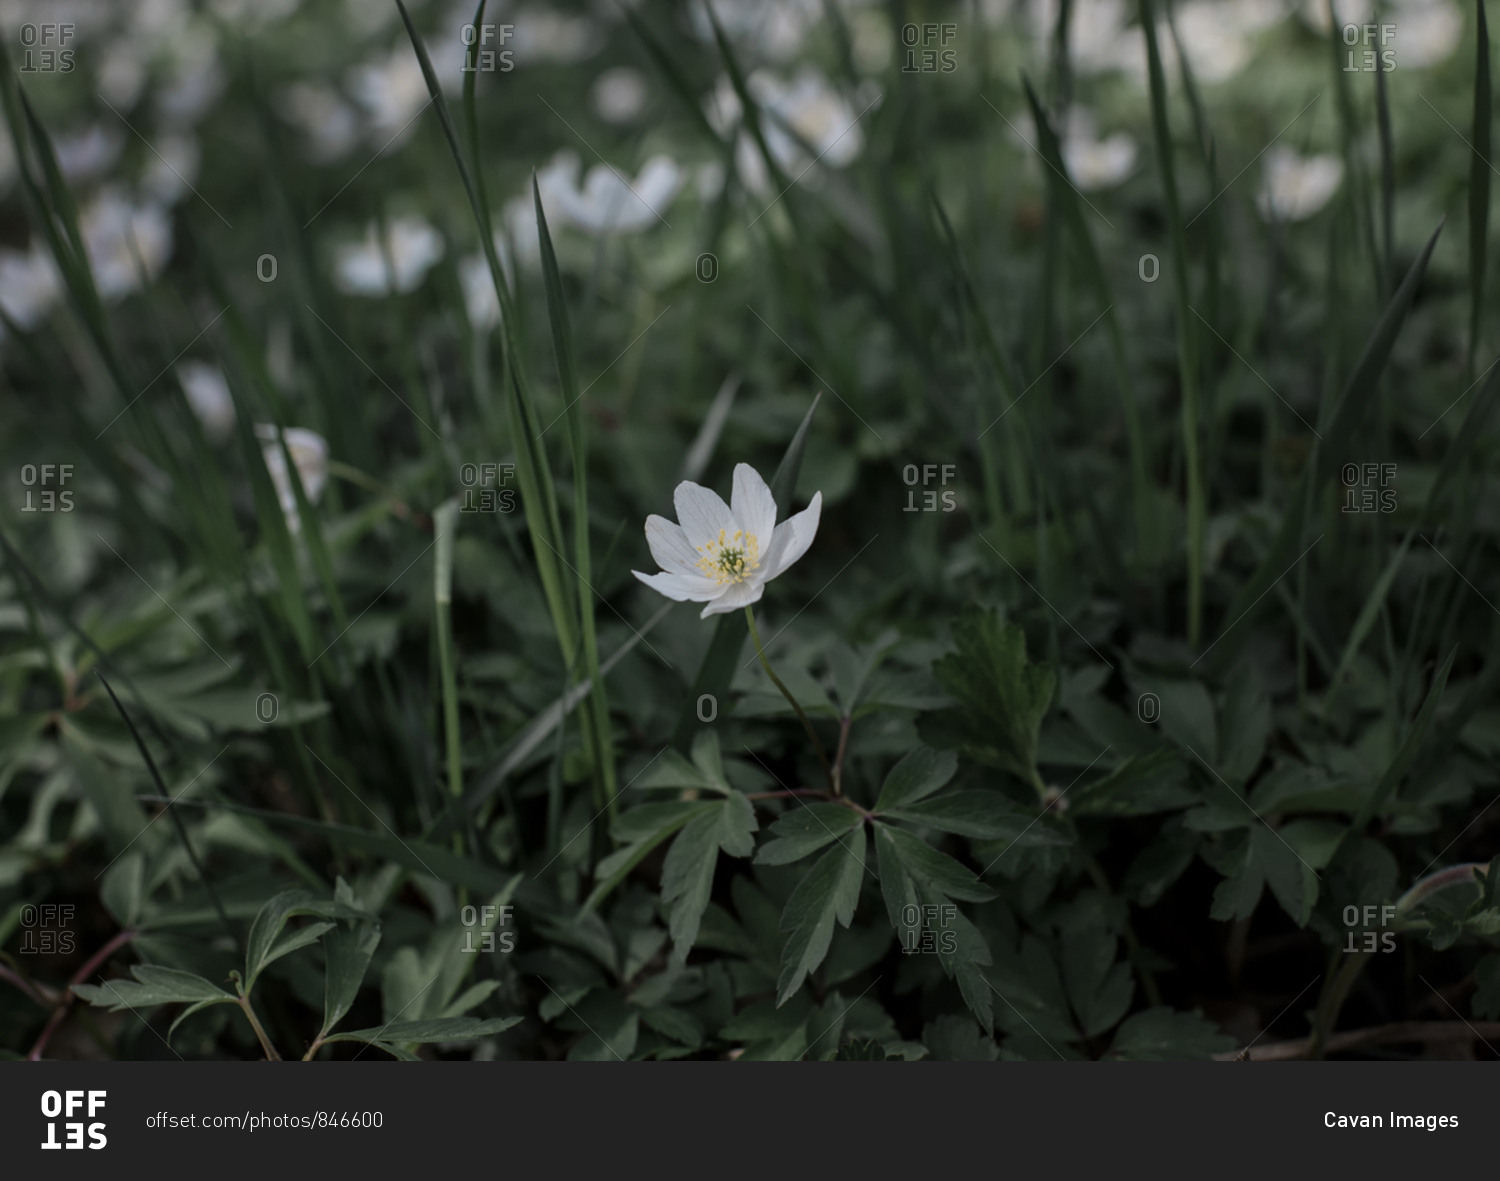 A single white flower amongst green grass